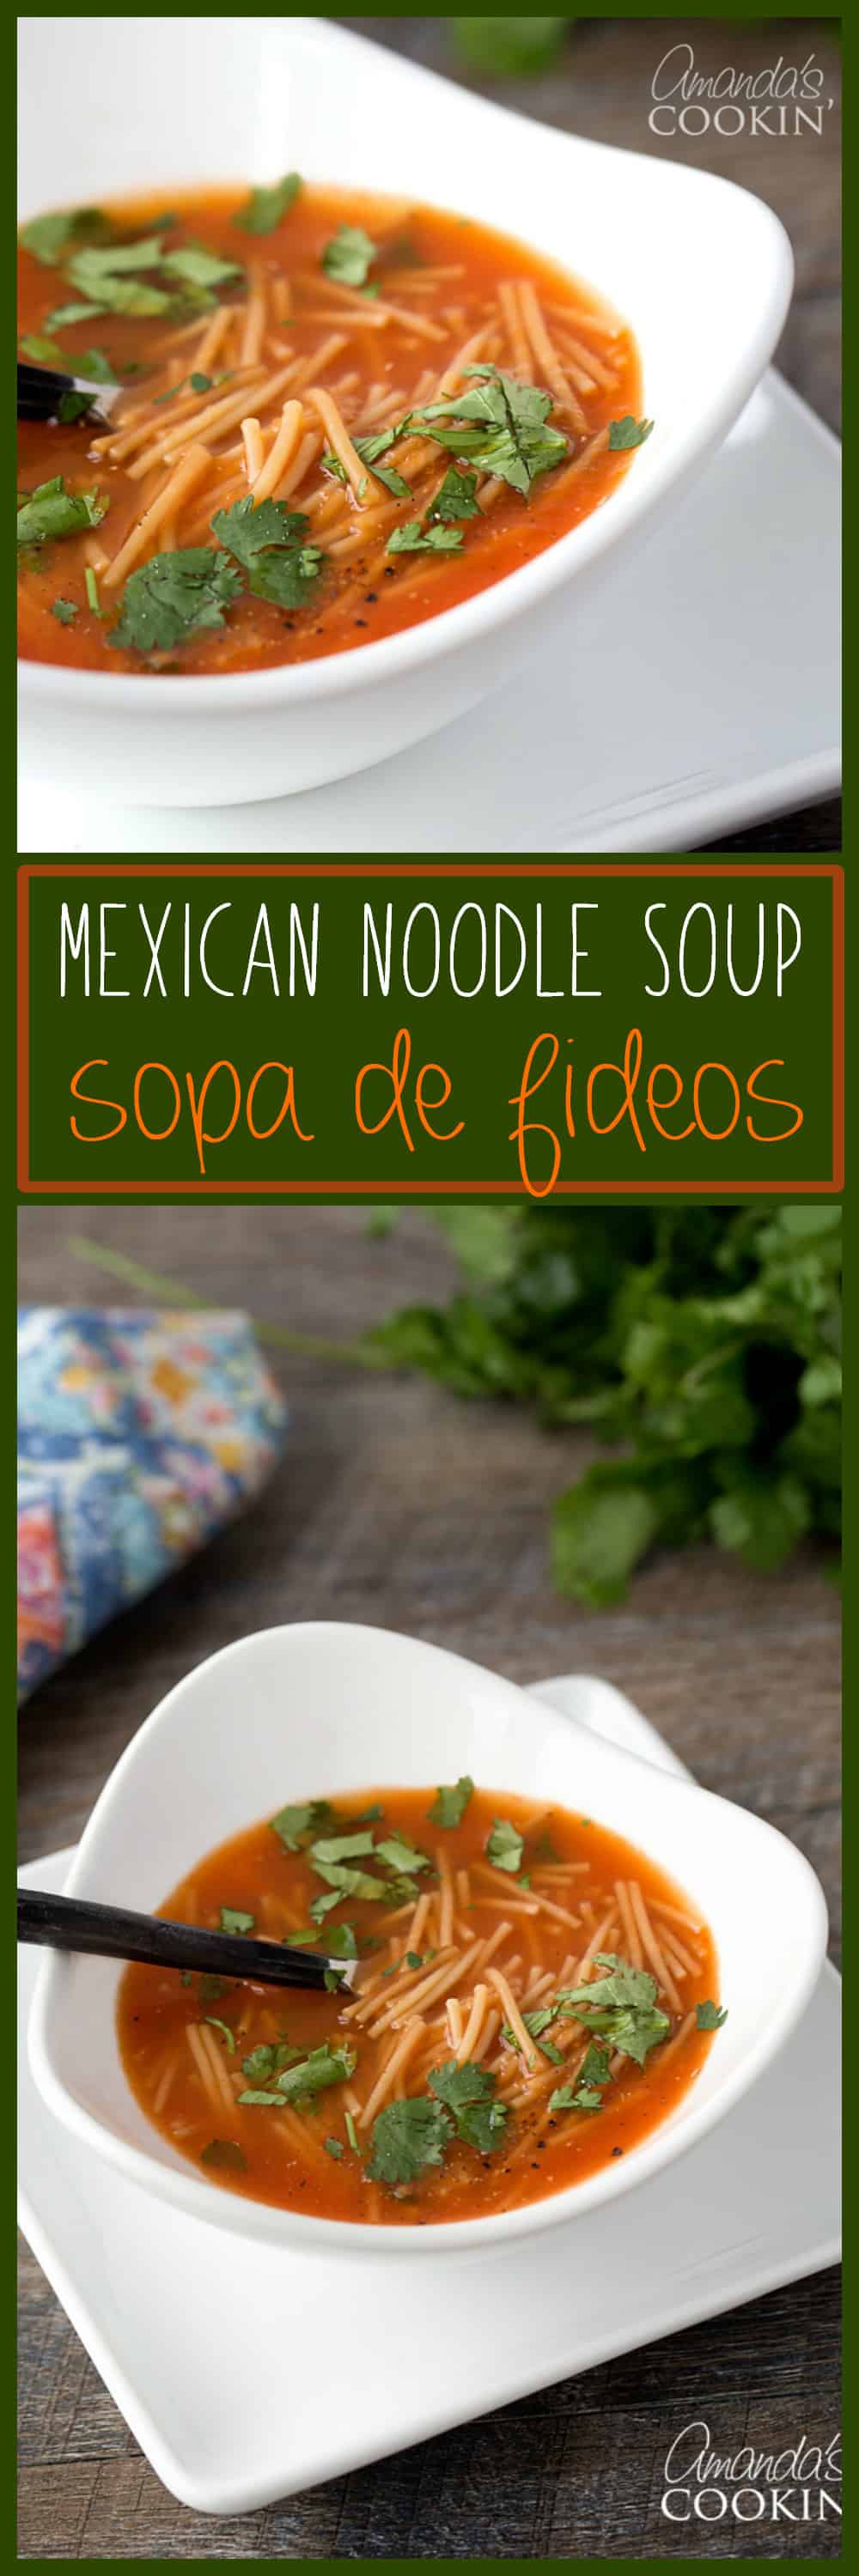 Mexican Noodle Soup, Sopa de Fideos: a flavorful cup of soup!